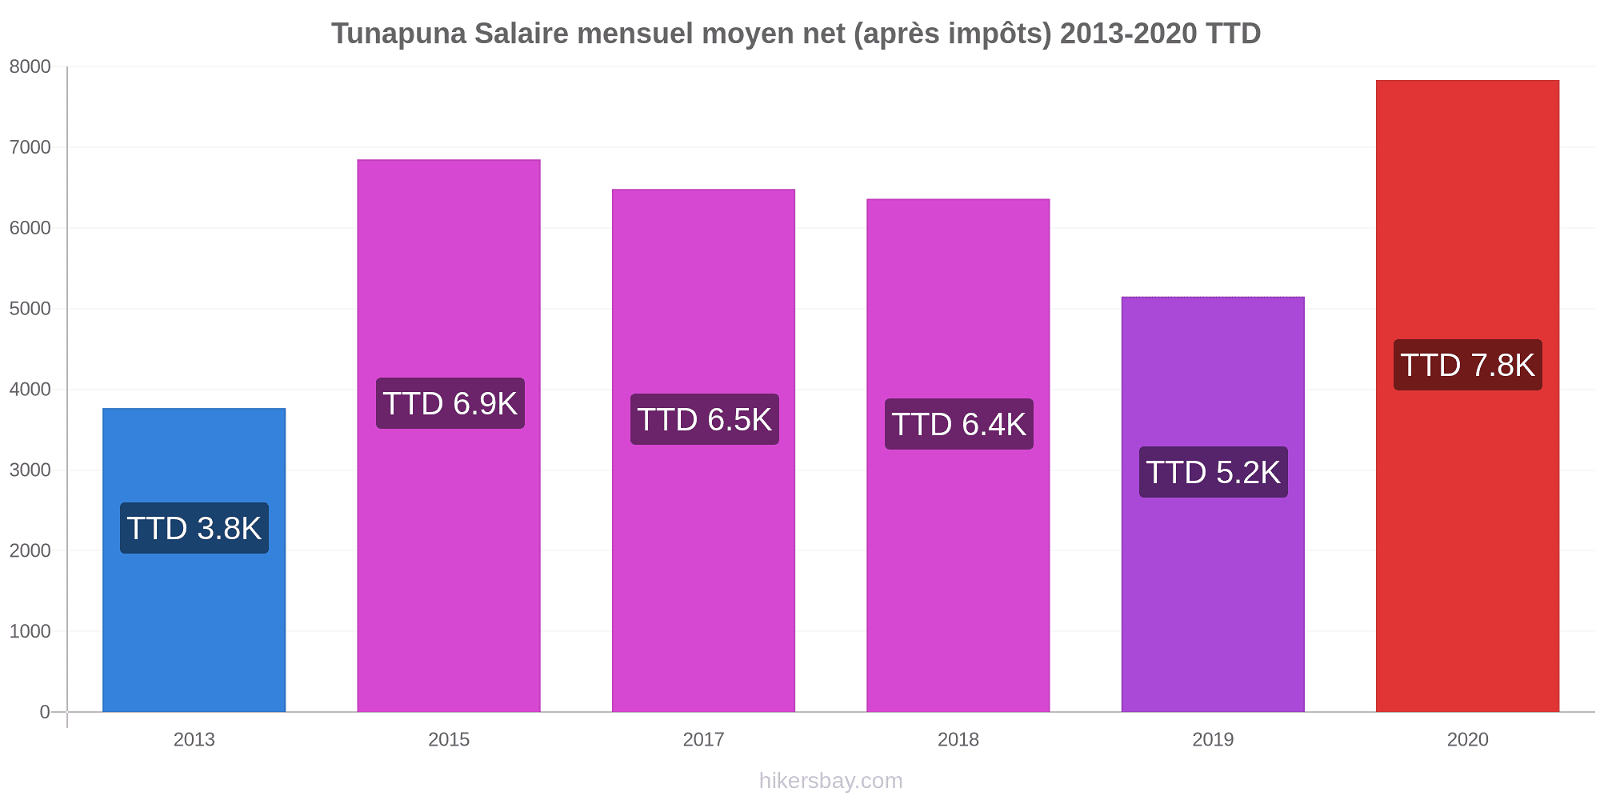 Tunapuna changements de prix Salaire mensuel Net (après impôts) hikersbay.com